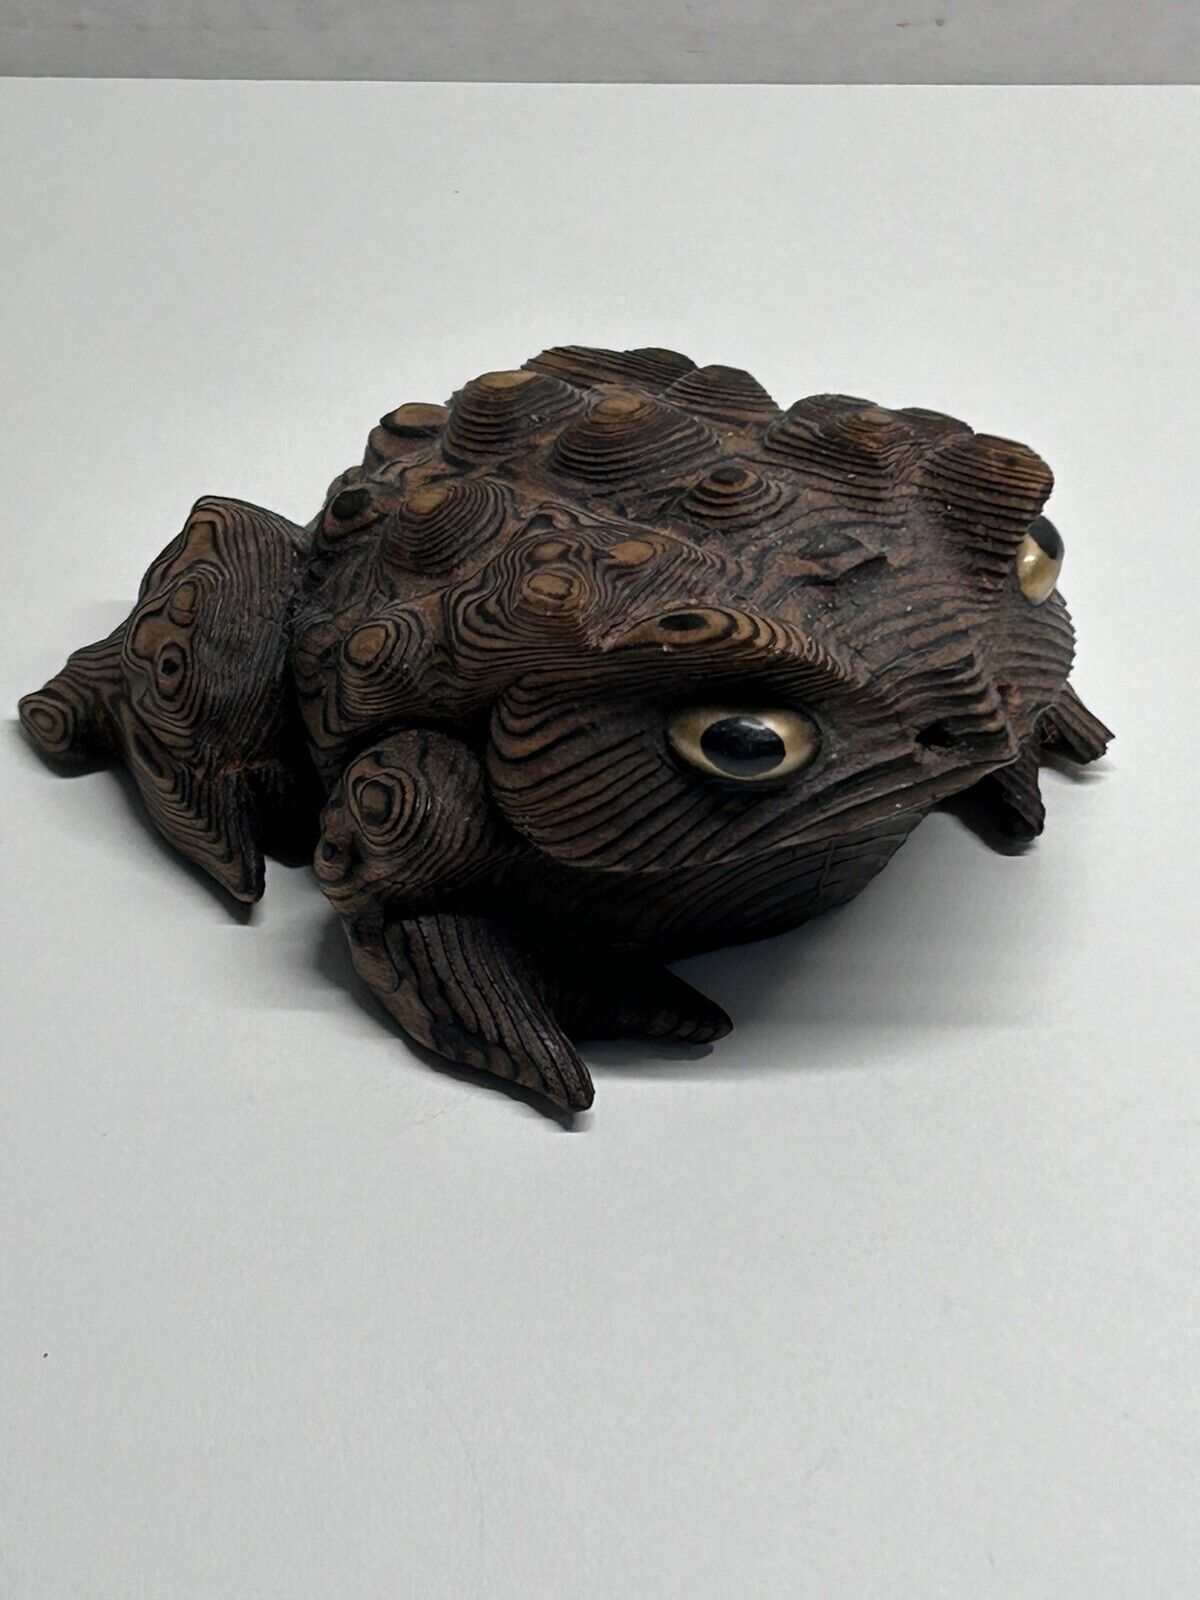 Vintage Cryptomeria Carved Wood Toad Frog Figurine 3.75”